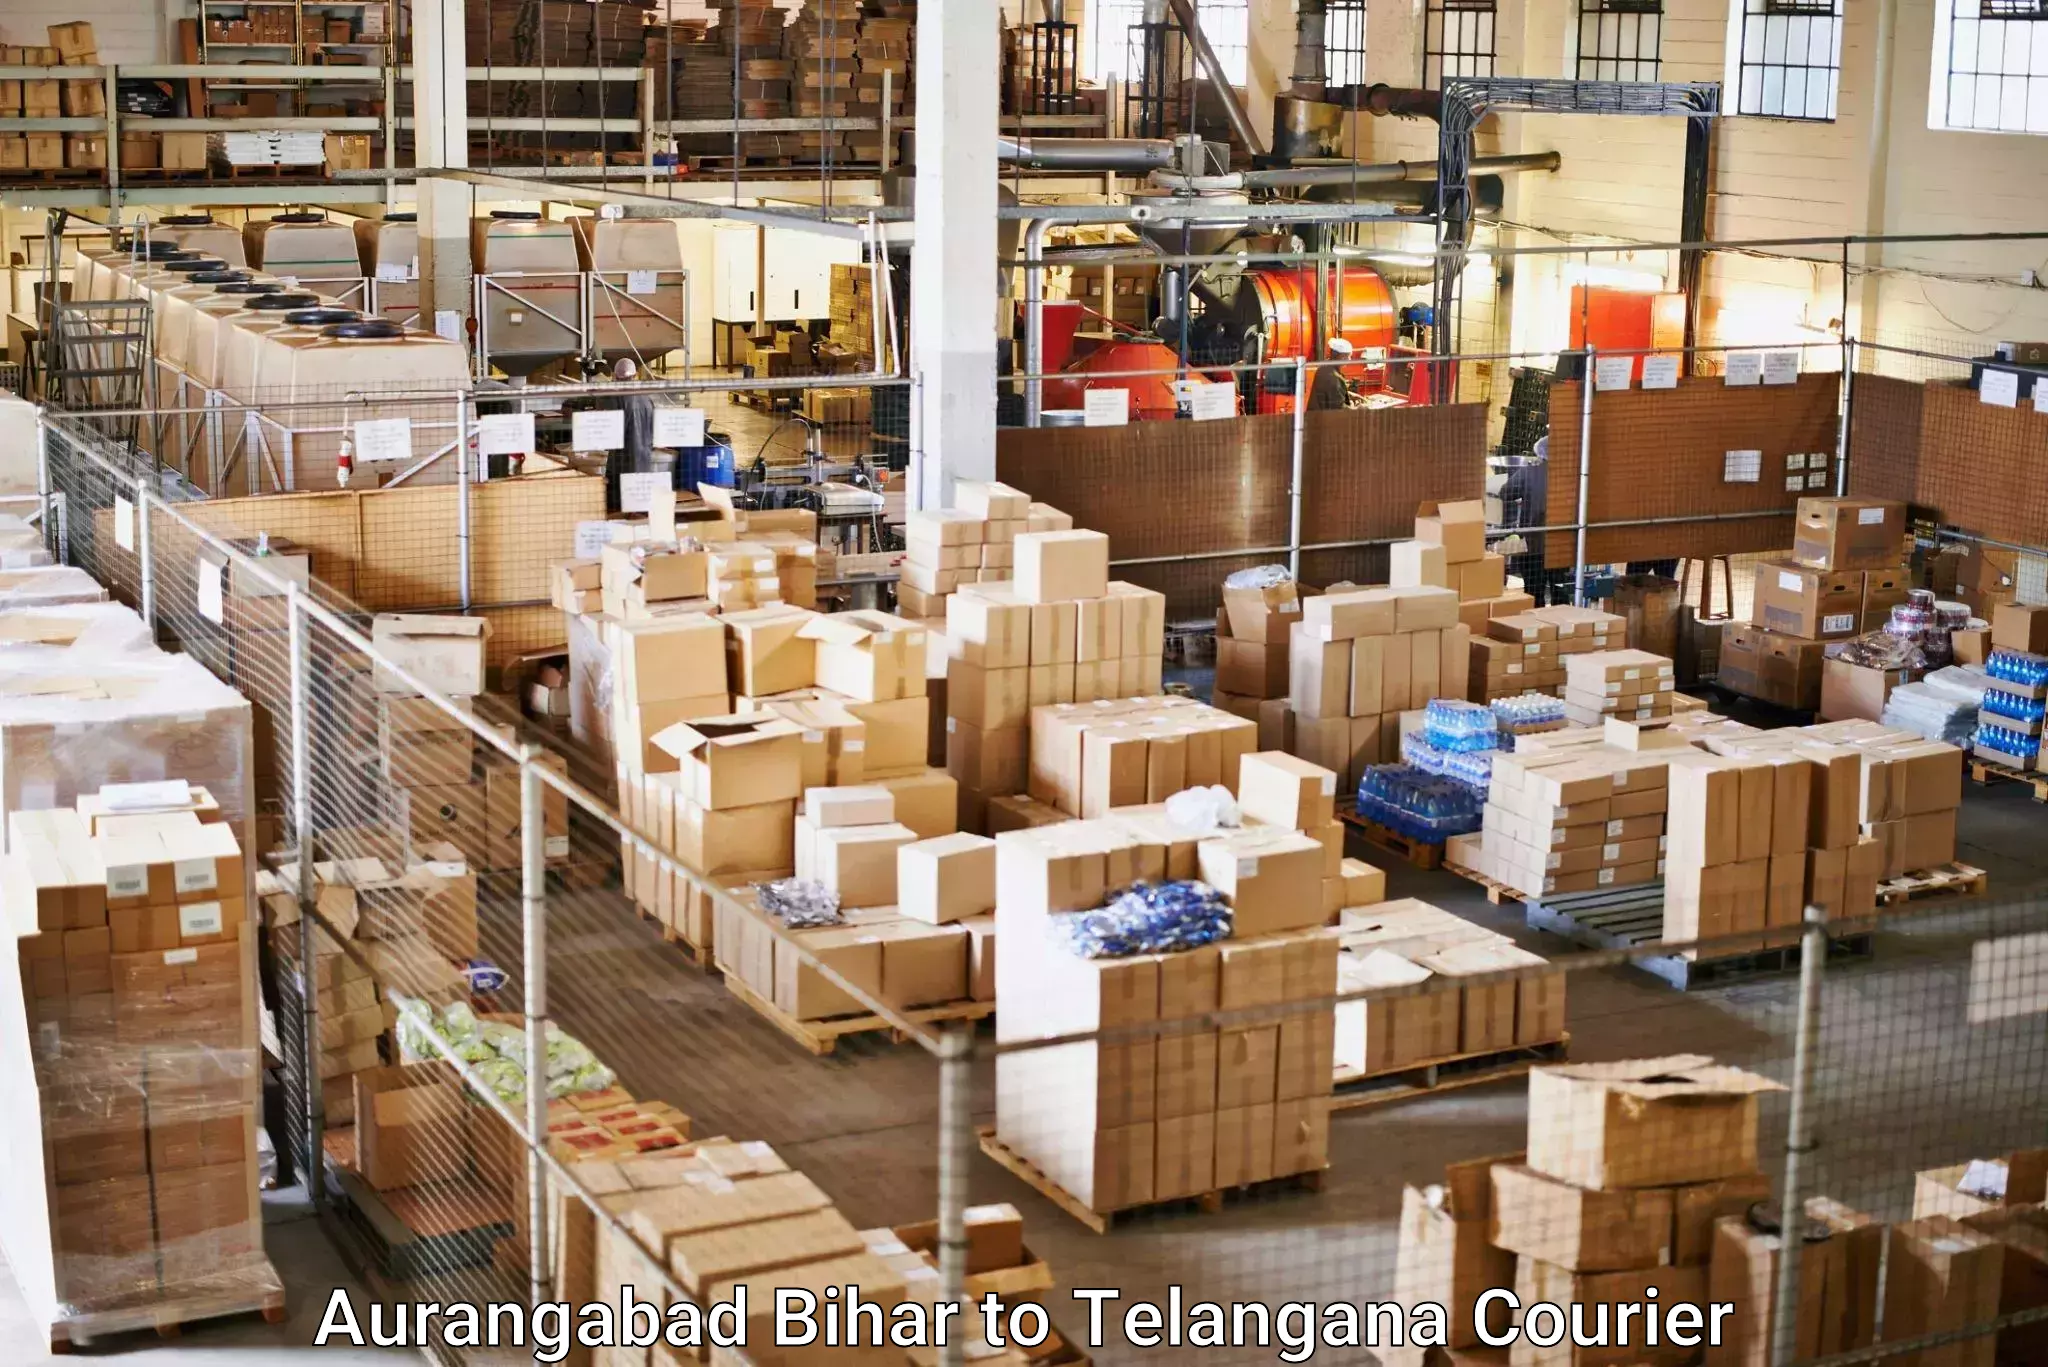 Bulk order courier Aurangabad Bihar to Khammam